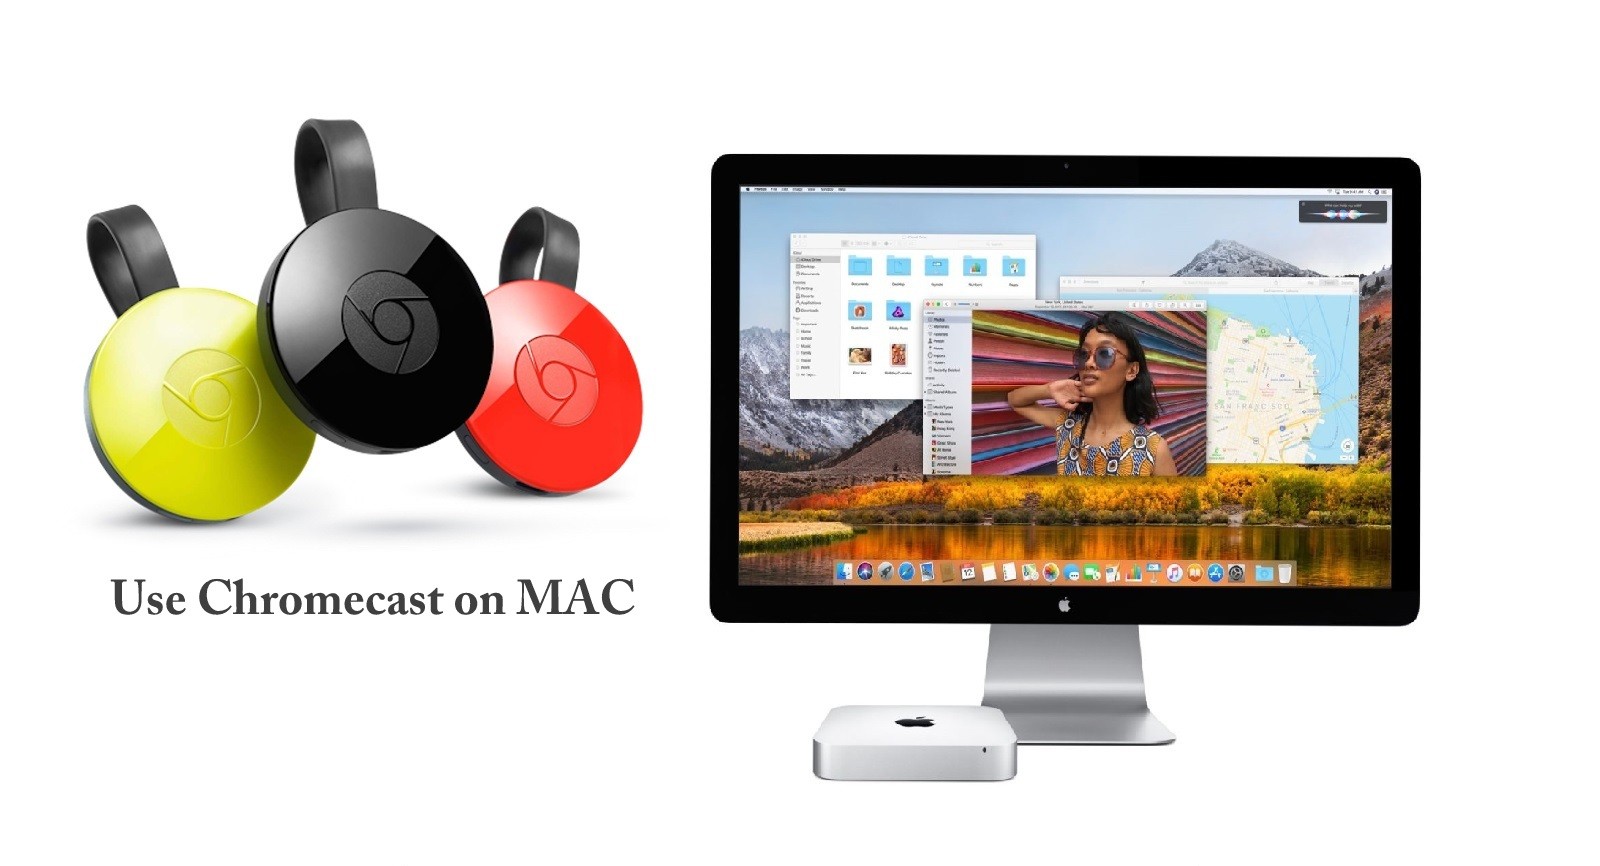 chromecast for mac, google